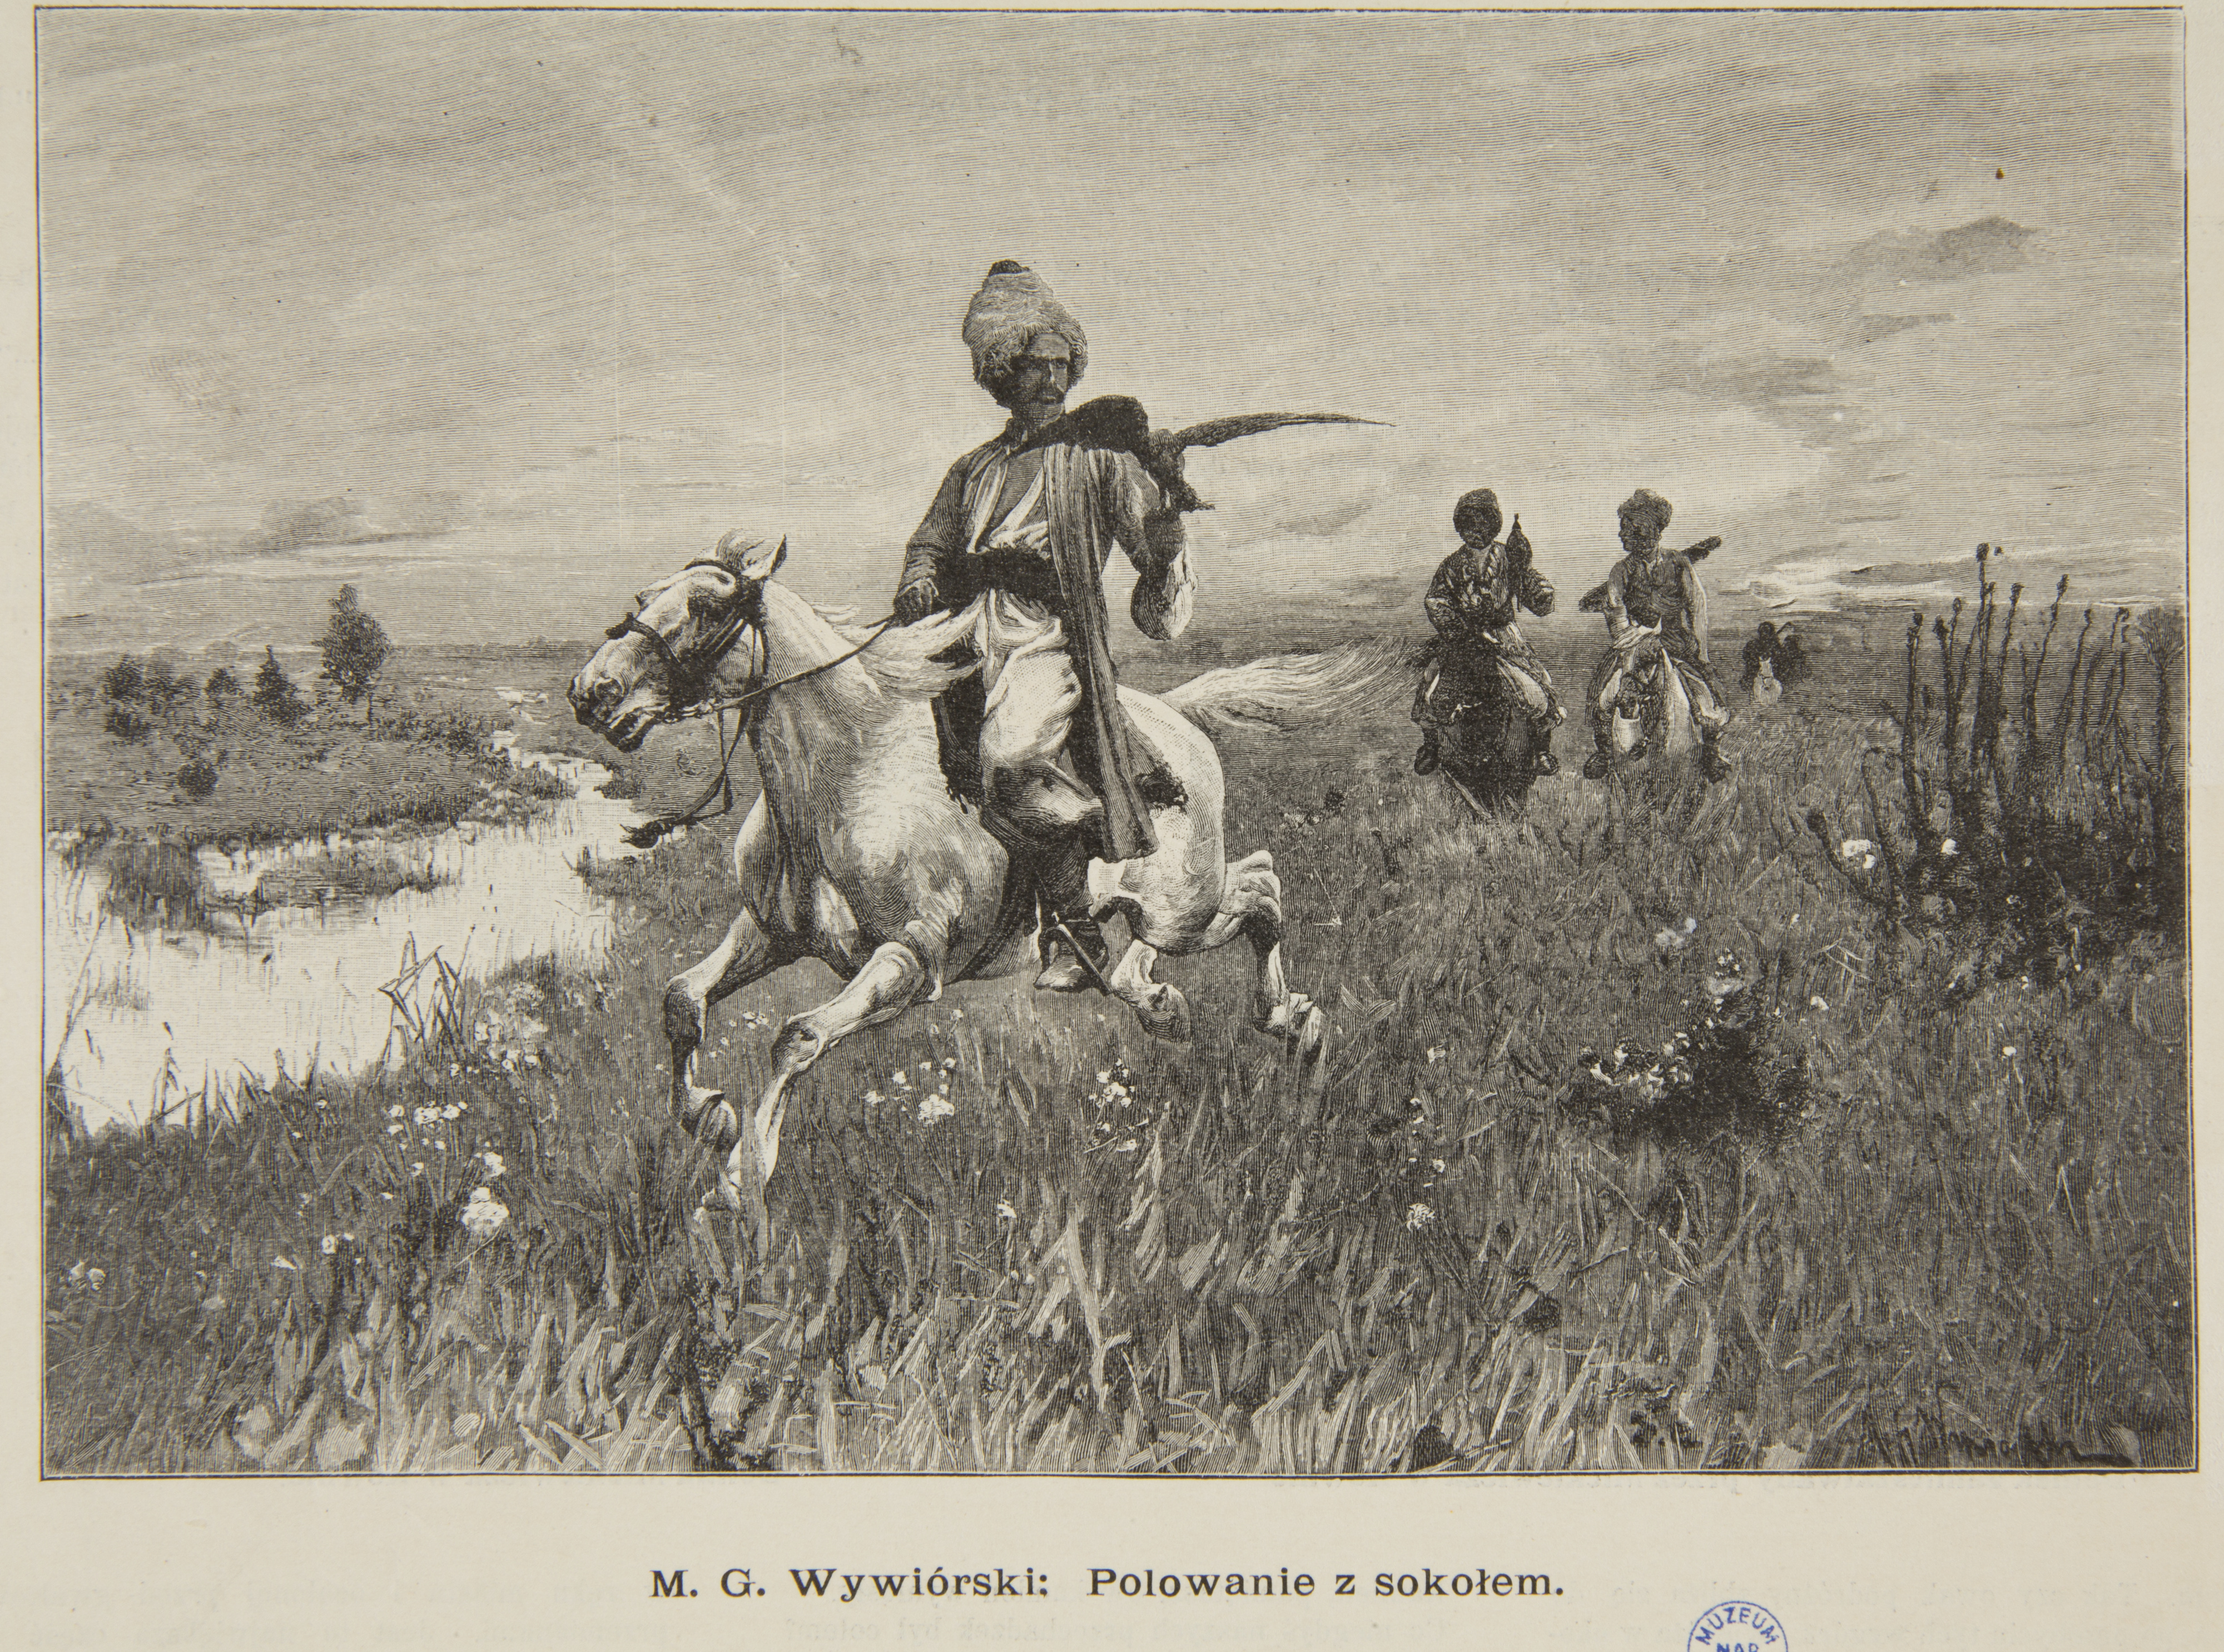 Michał G. Wywiórski (1861-1926), "Polowanie z sokołem", obraz reprodukowany w „Tygodniku Ilustrowanym” w 1898 roku